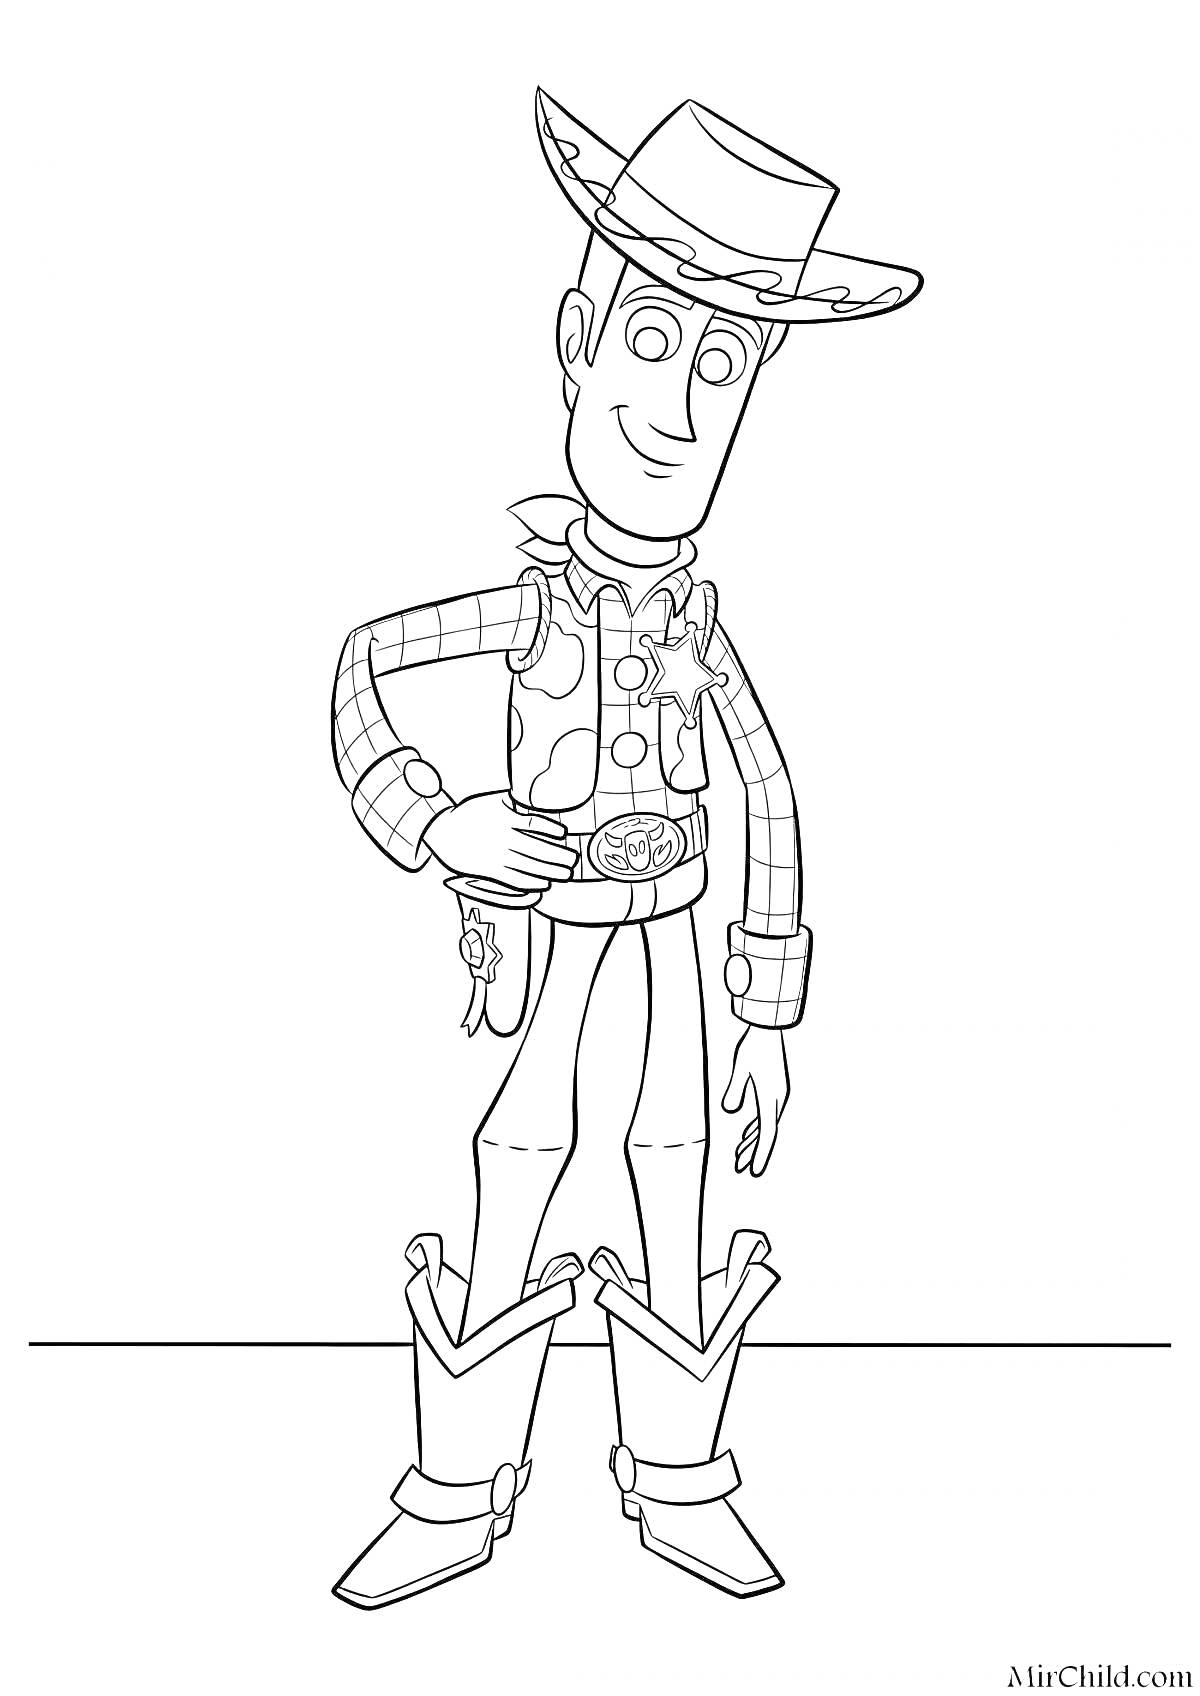 Раскраска Шериф в шляпе с звездой, ремнем, сапогами и пледом